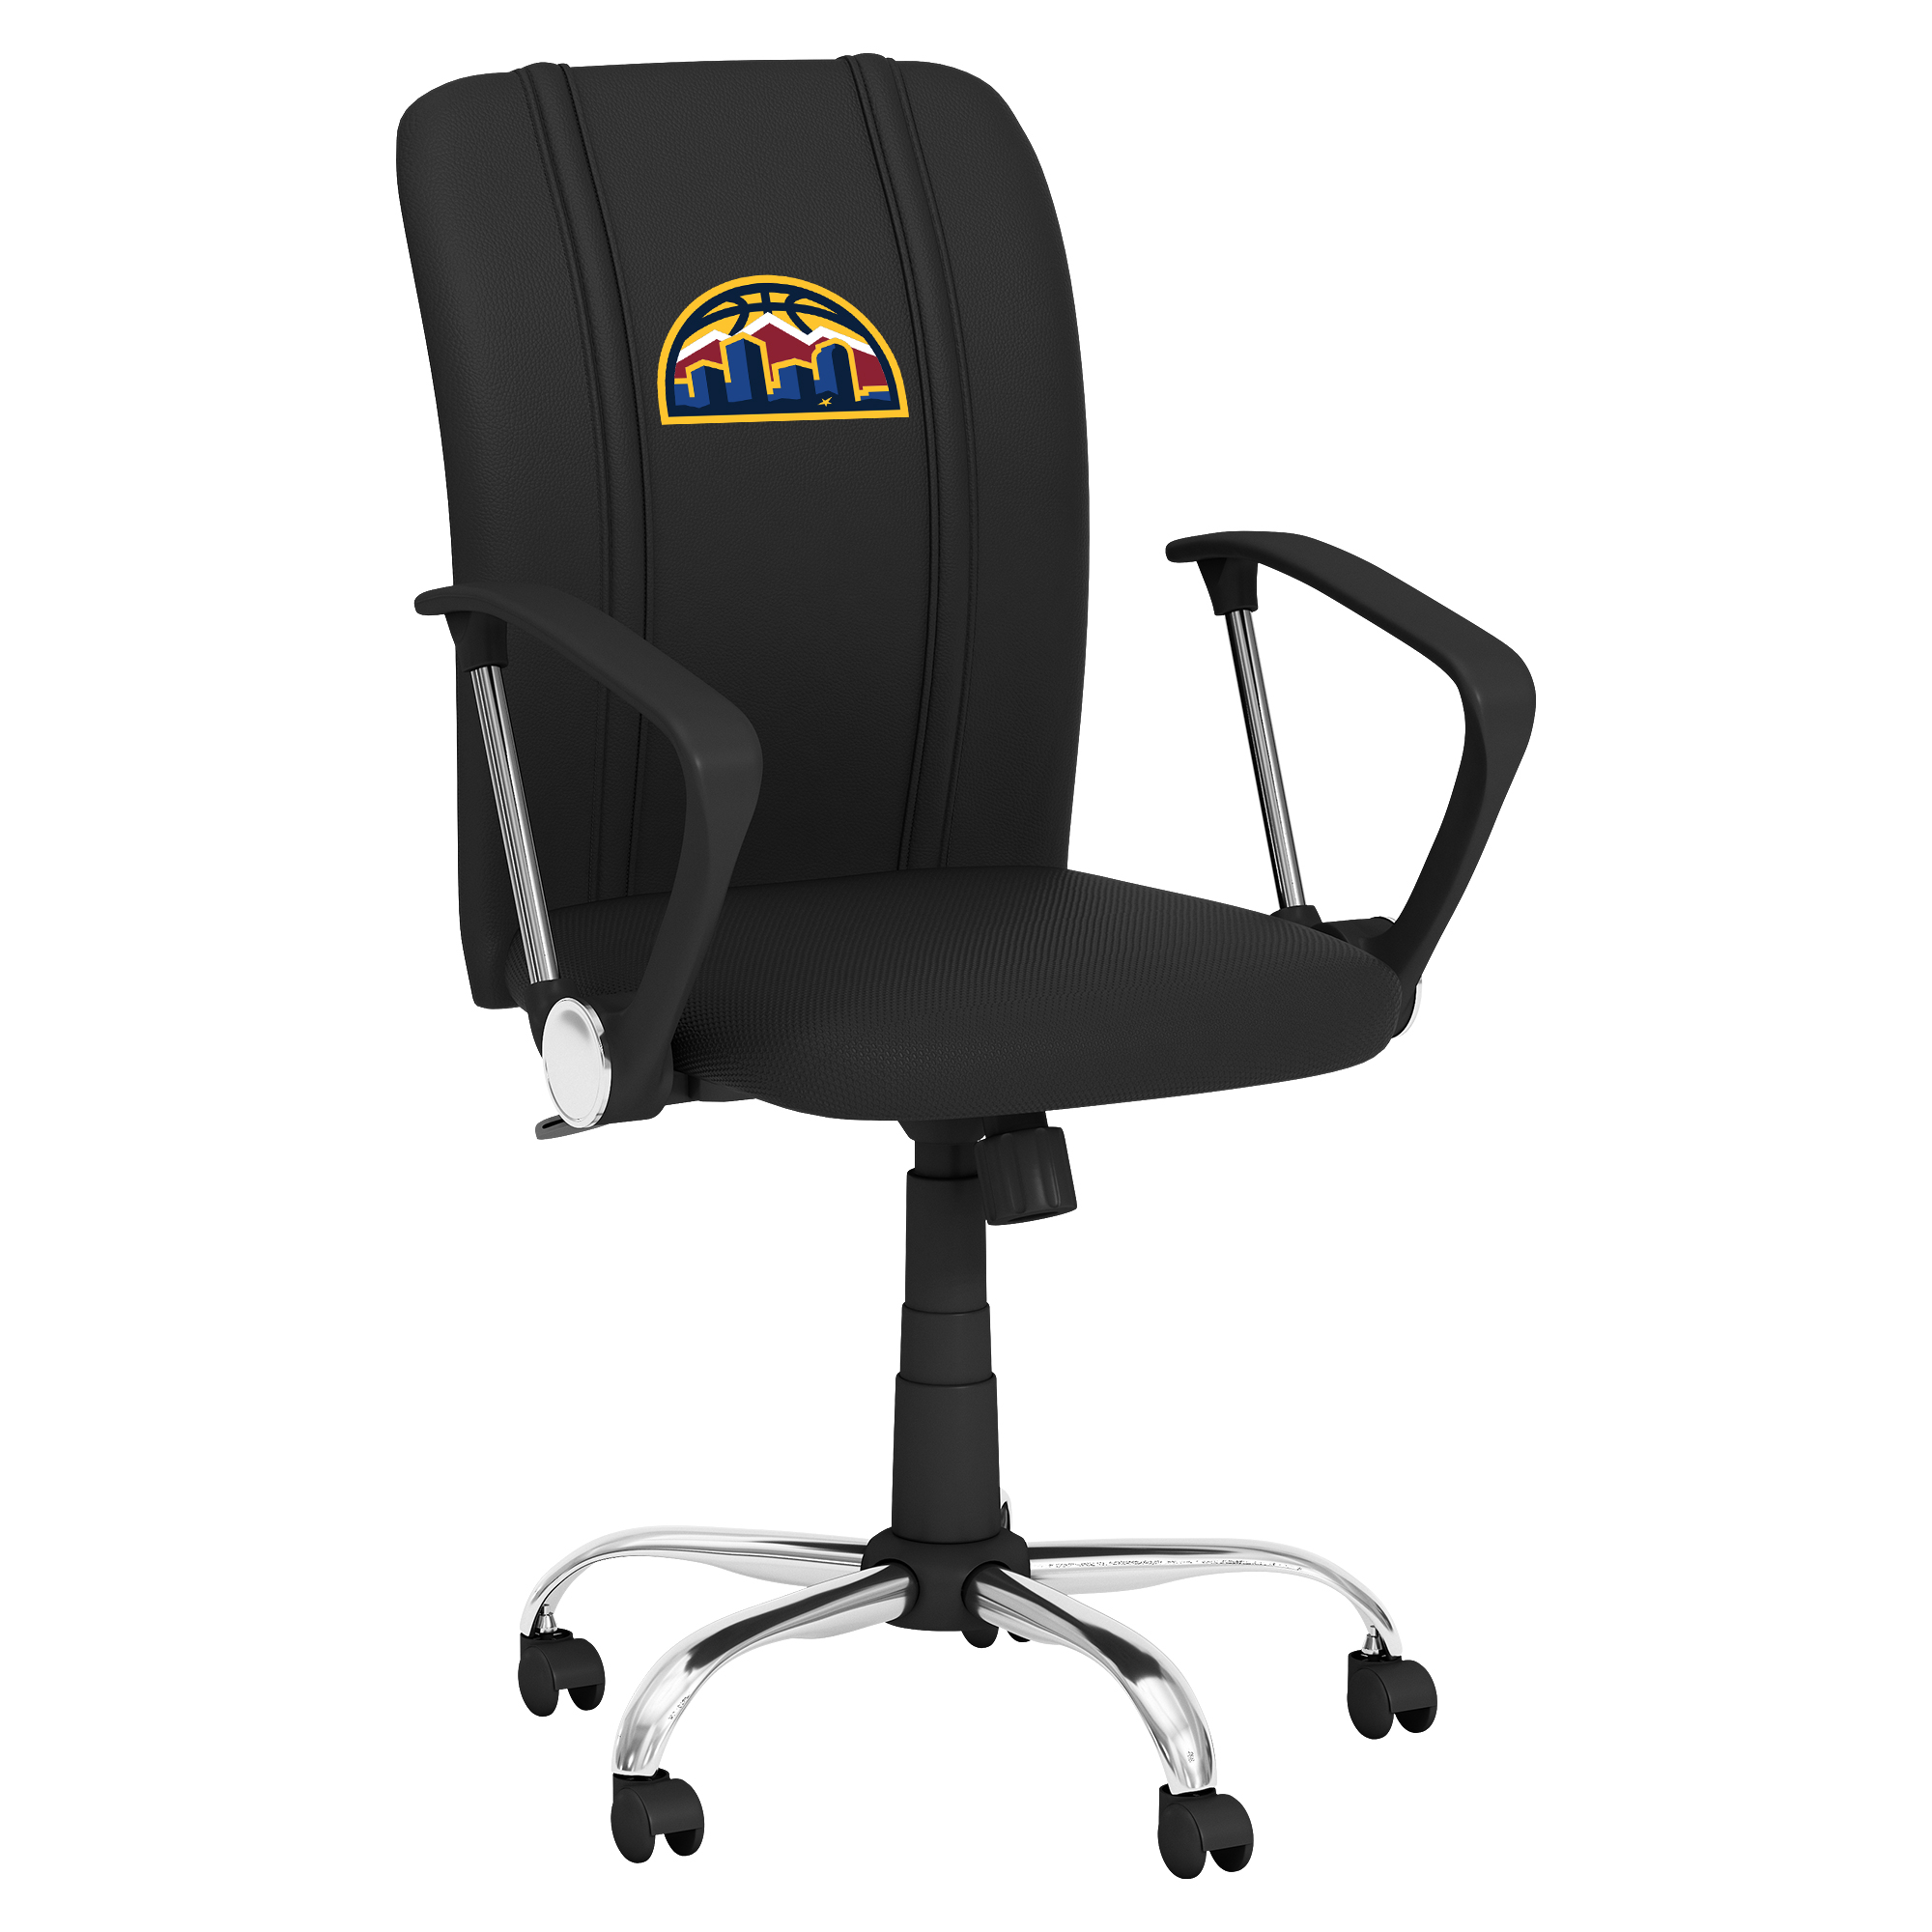 Denver Nuggets Curve Task Chair with Denver Nuggets Alternate Logo